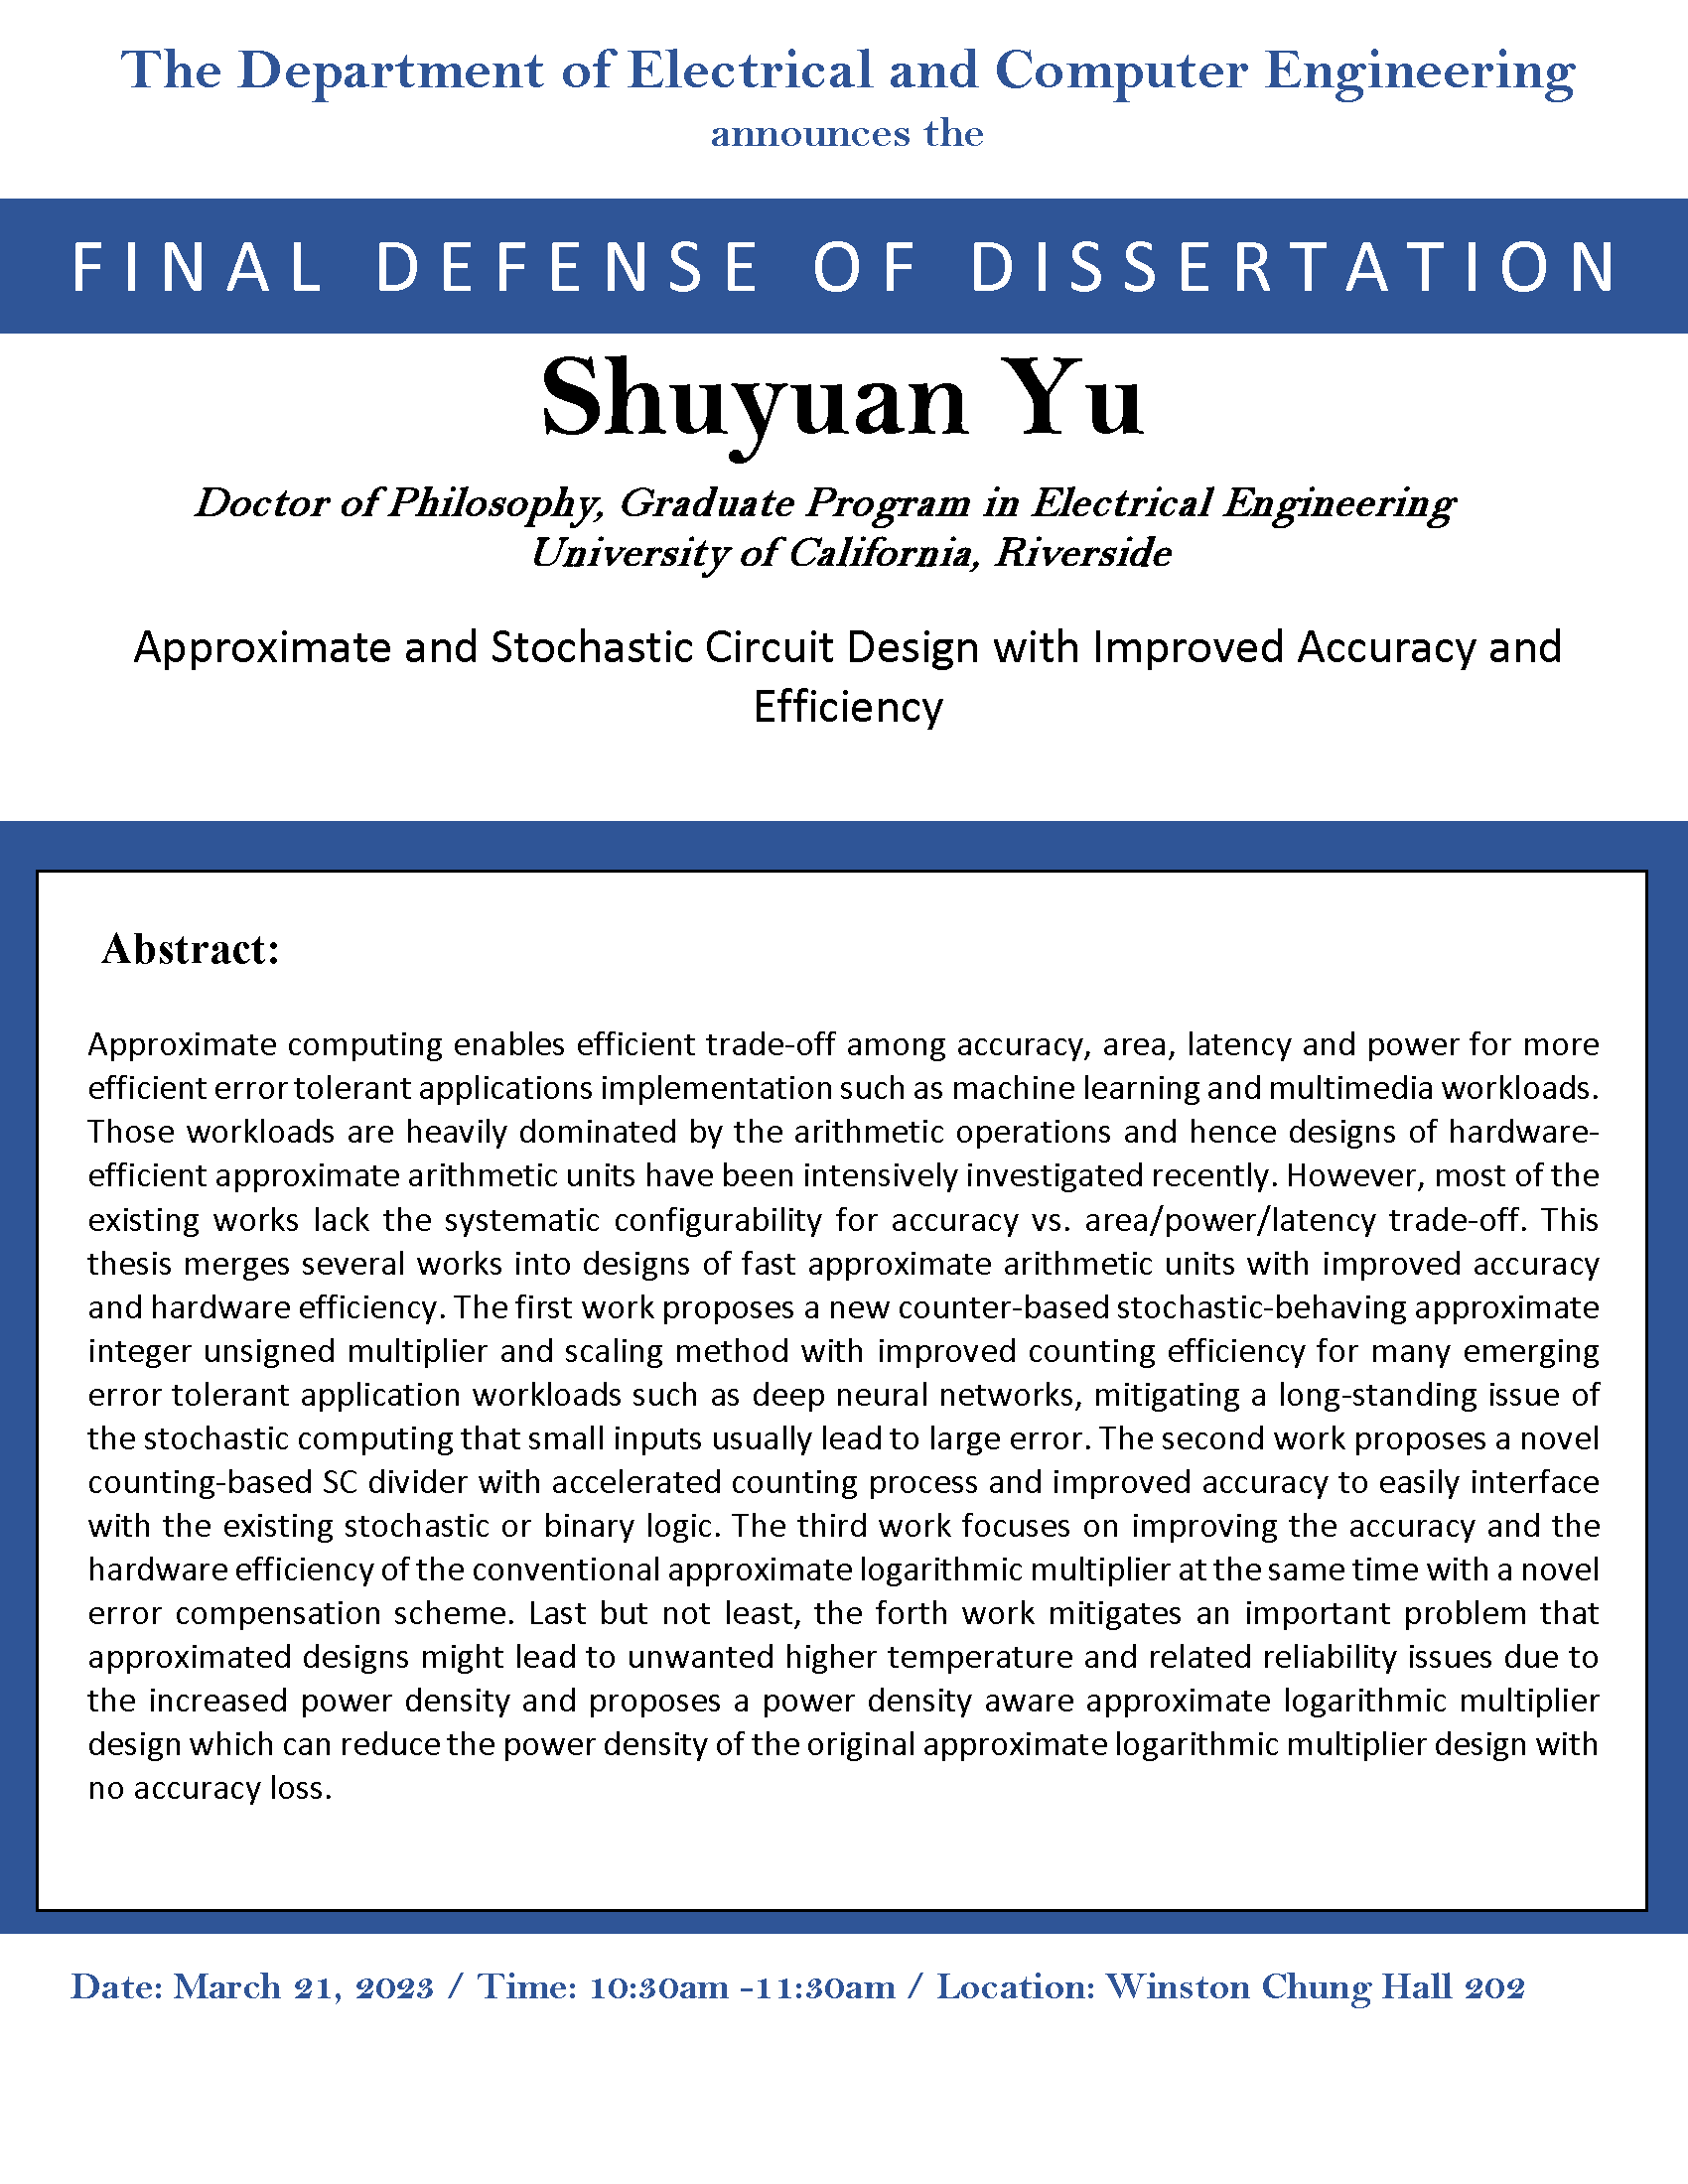 Shuyuan Yu